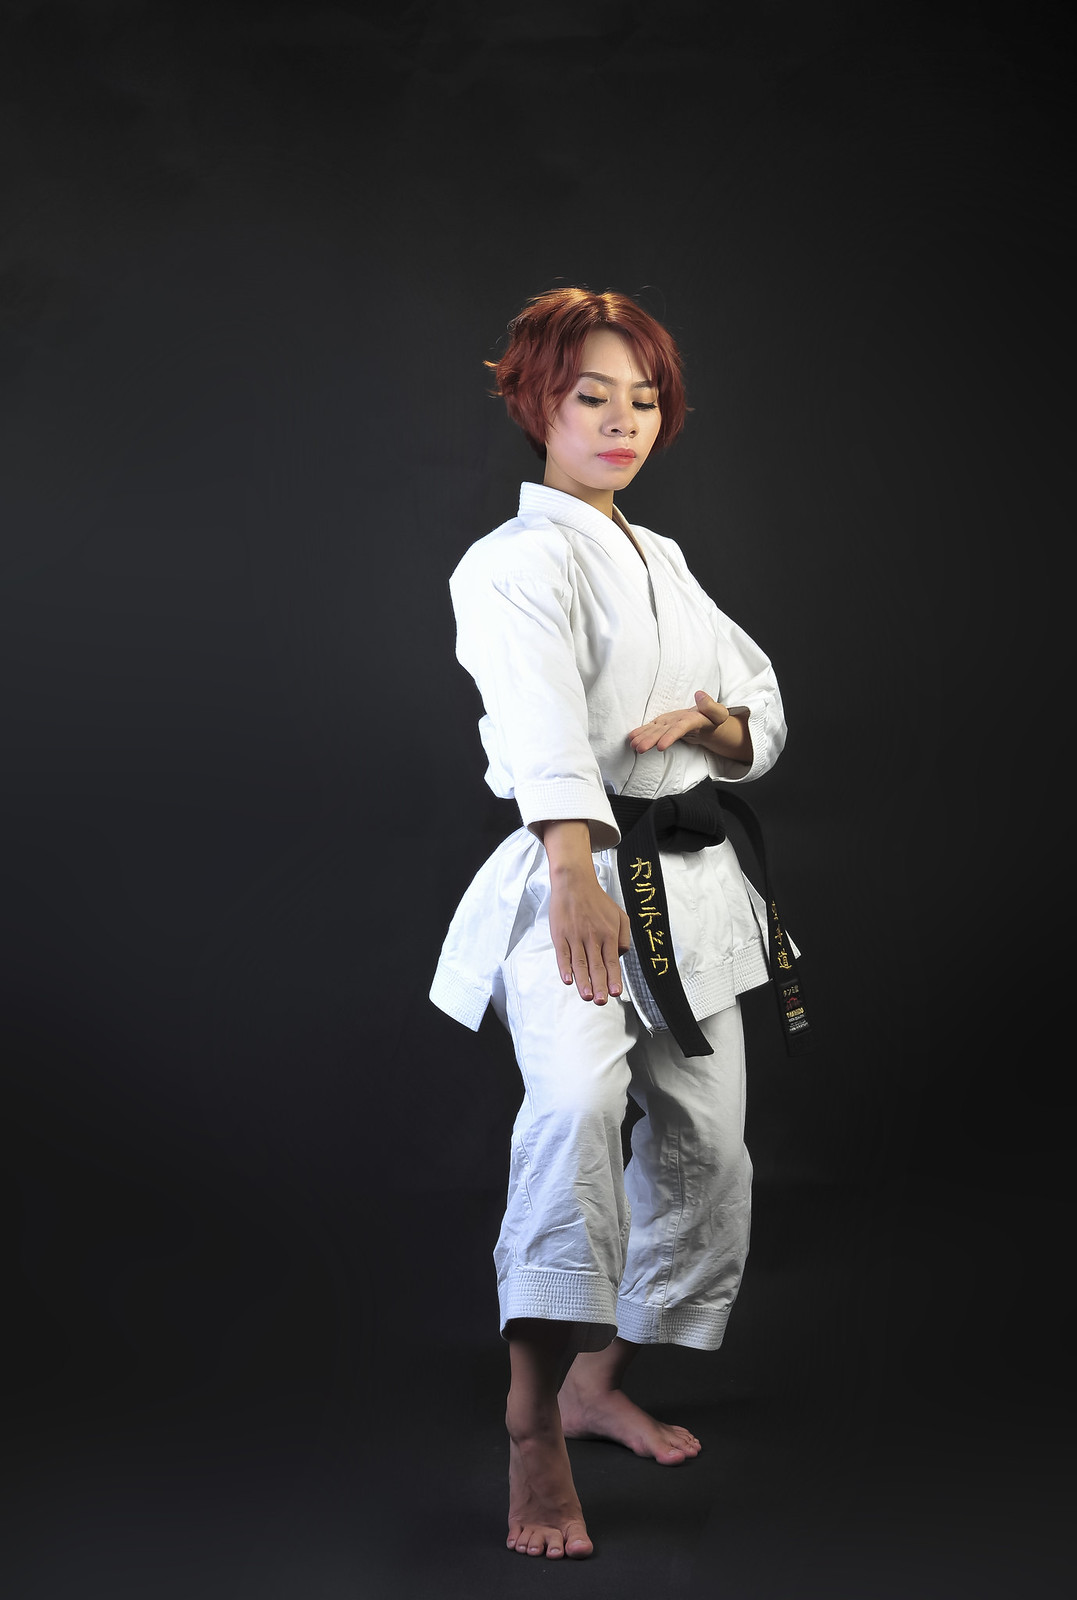 42931009992 33f92fcb1f h - Bộ ảnh võ thuật Karate Girl phiên bản Việt